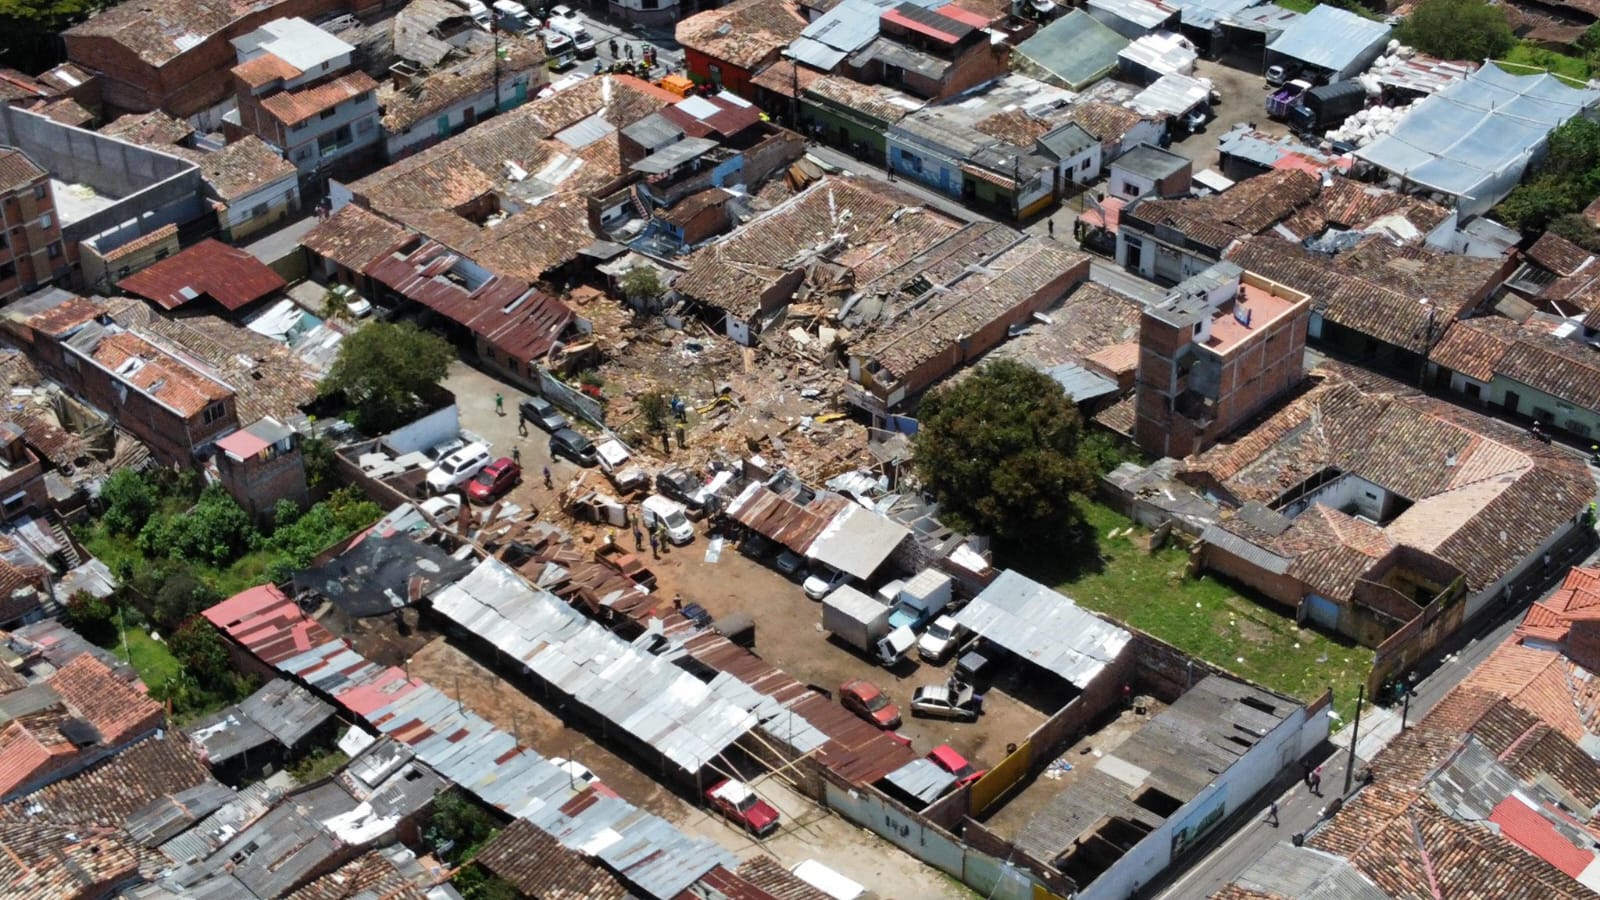 ¡Tragedia! Una persona muerta y varias heridas dejó explosión en Rionegro